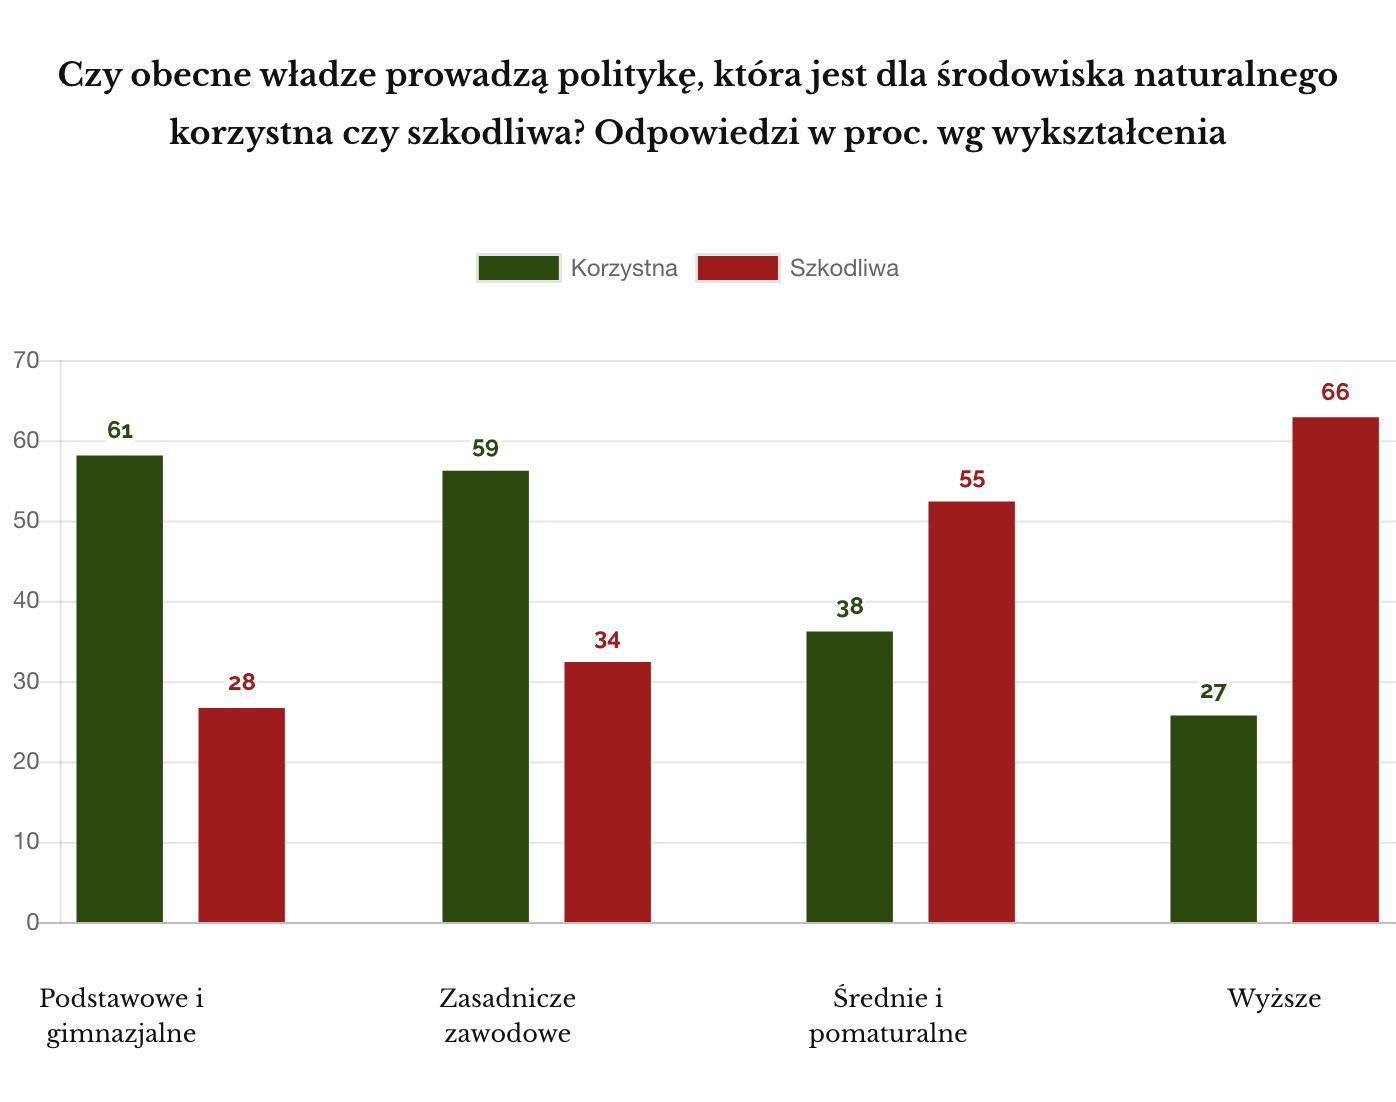 ipsos sierpień 2019 polityka władz korzystna dla środowiska - wykształcenie